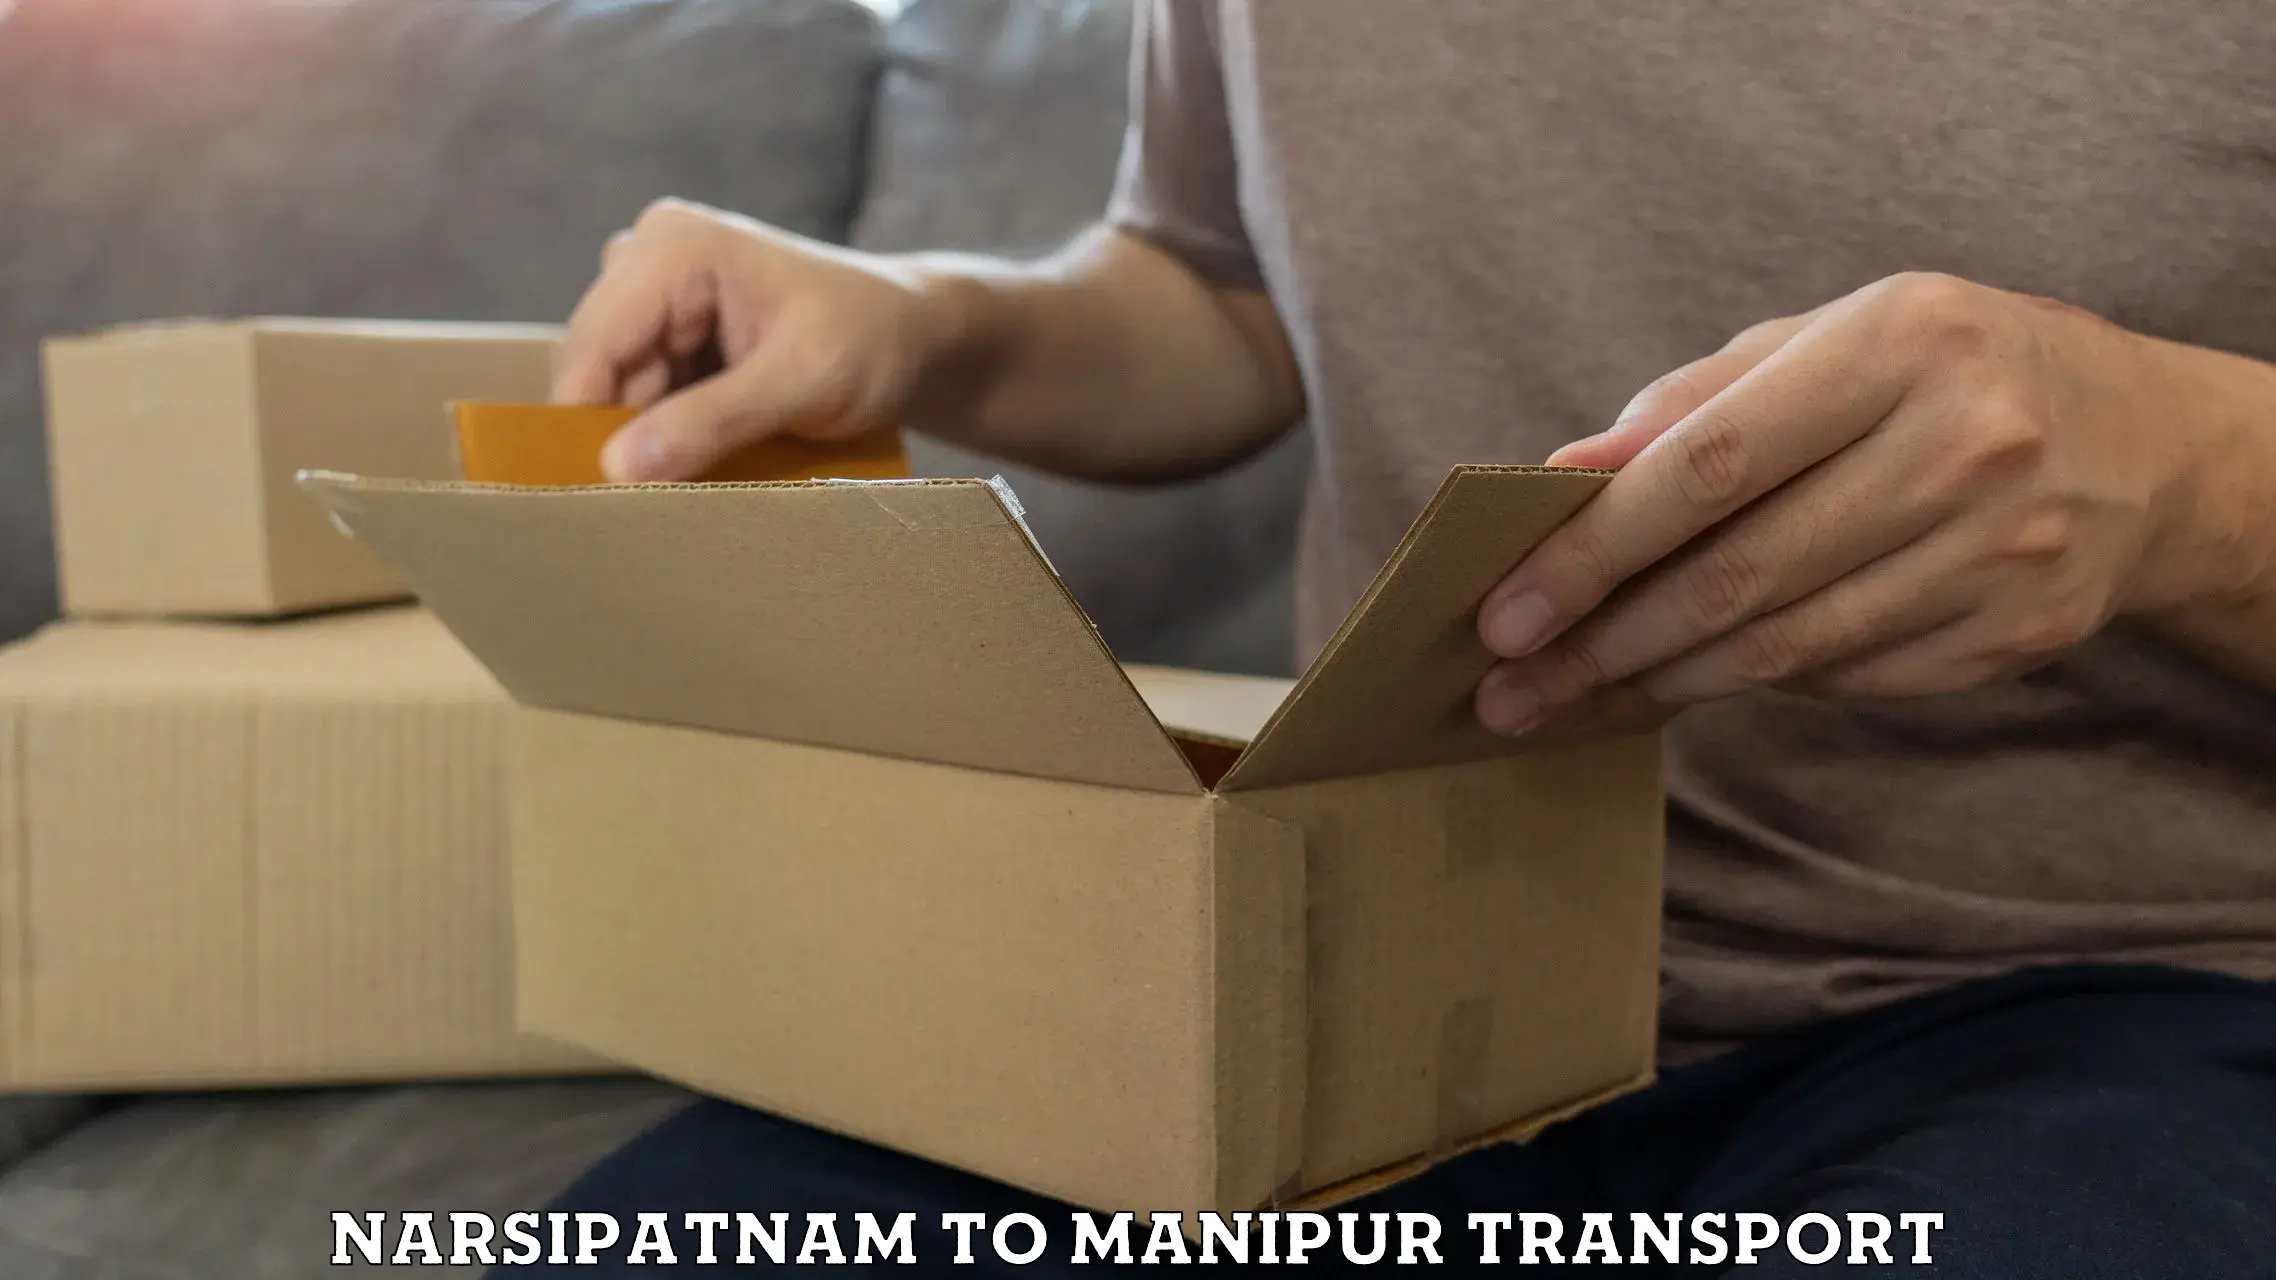 Bike transport service Narsipatnam to Manipur